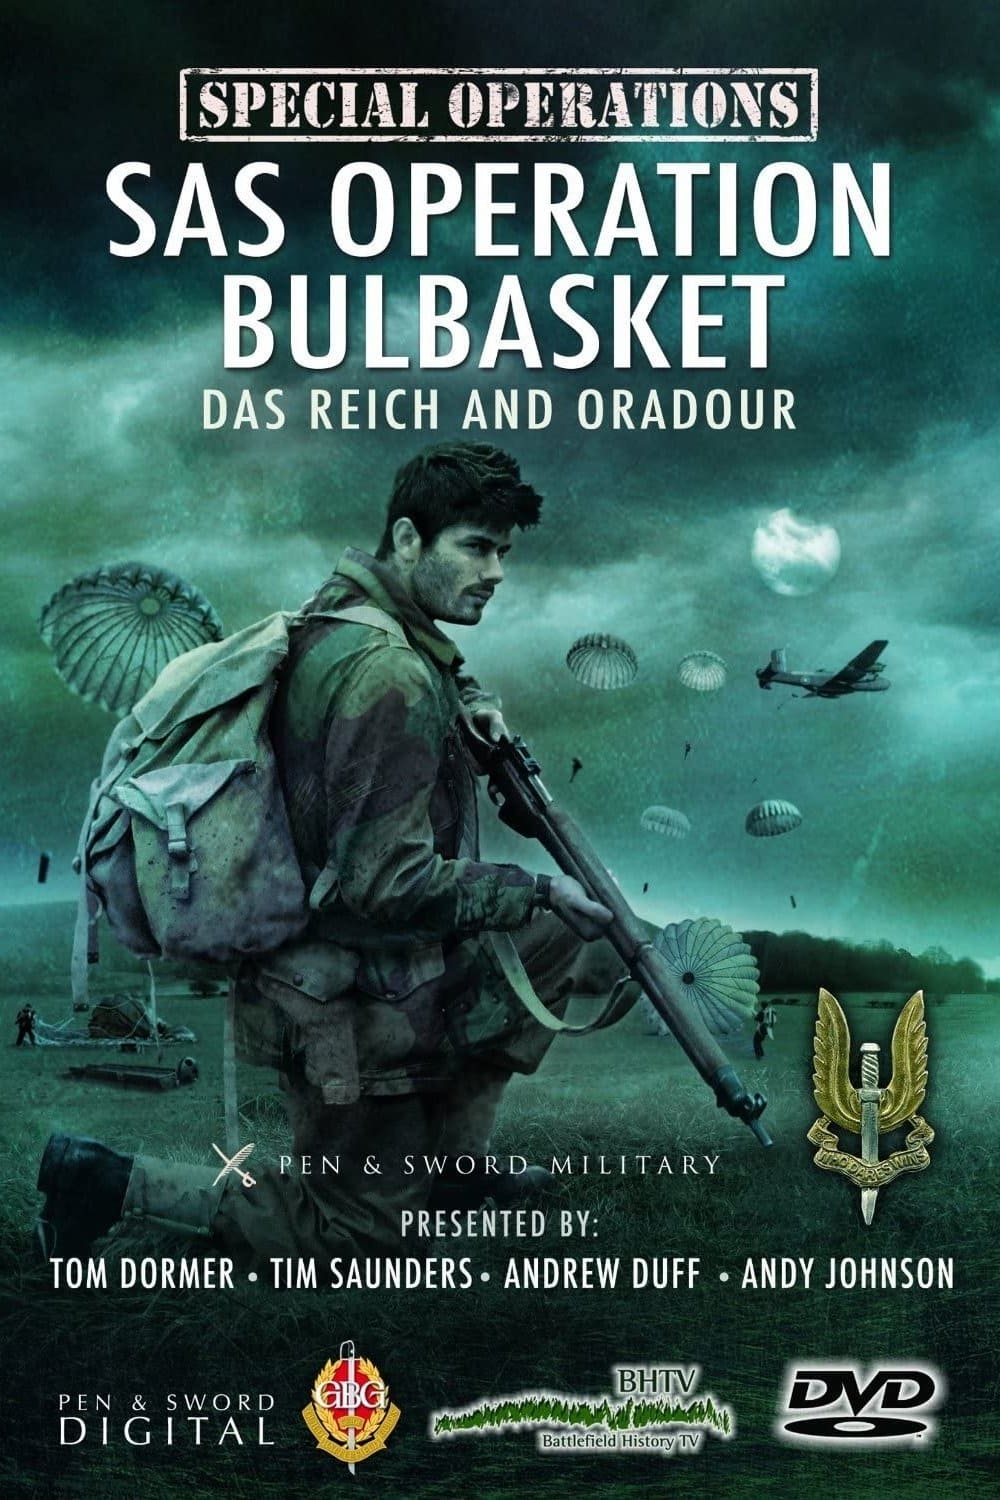 SAS Operation Bulbasket: Part 1 - Das Reich and Oradour